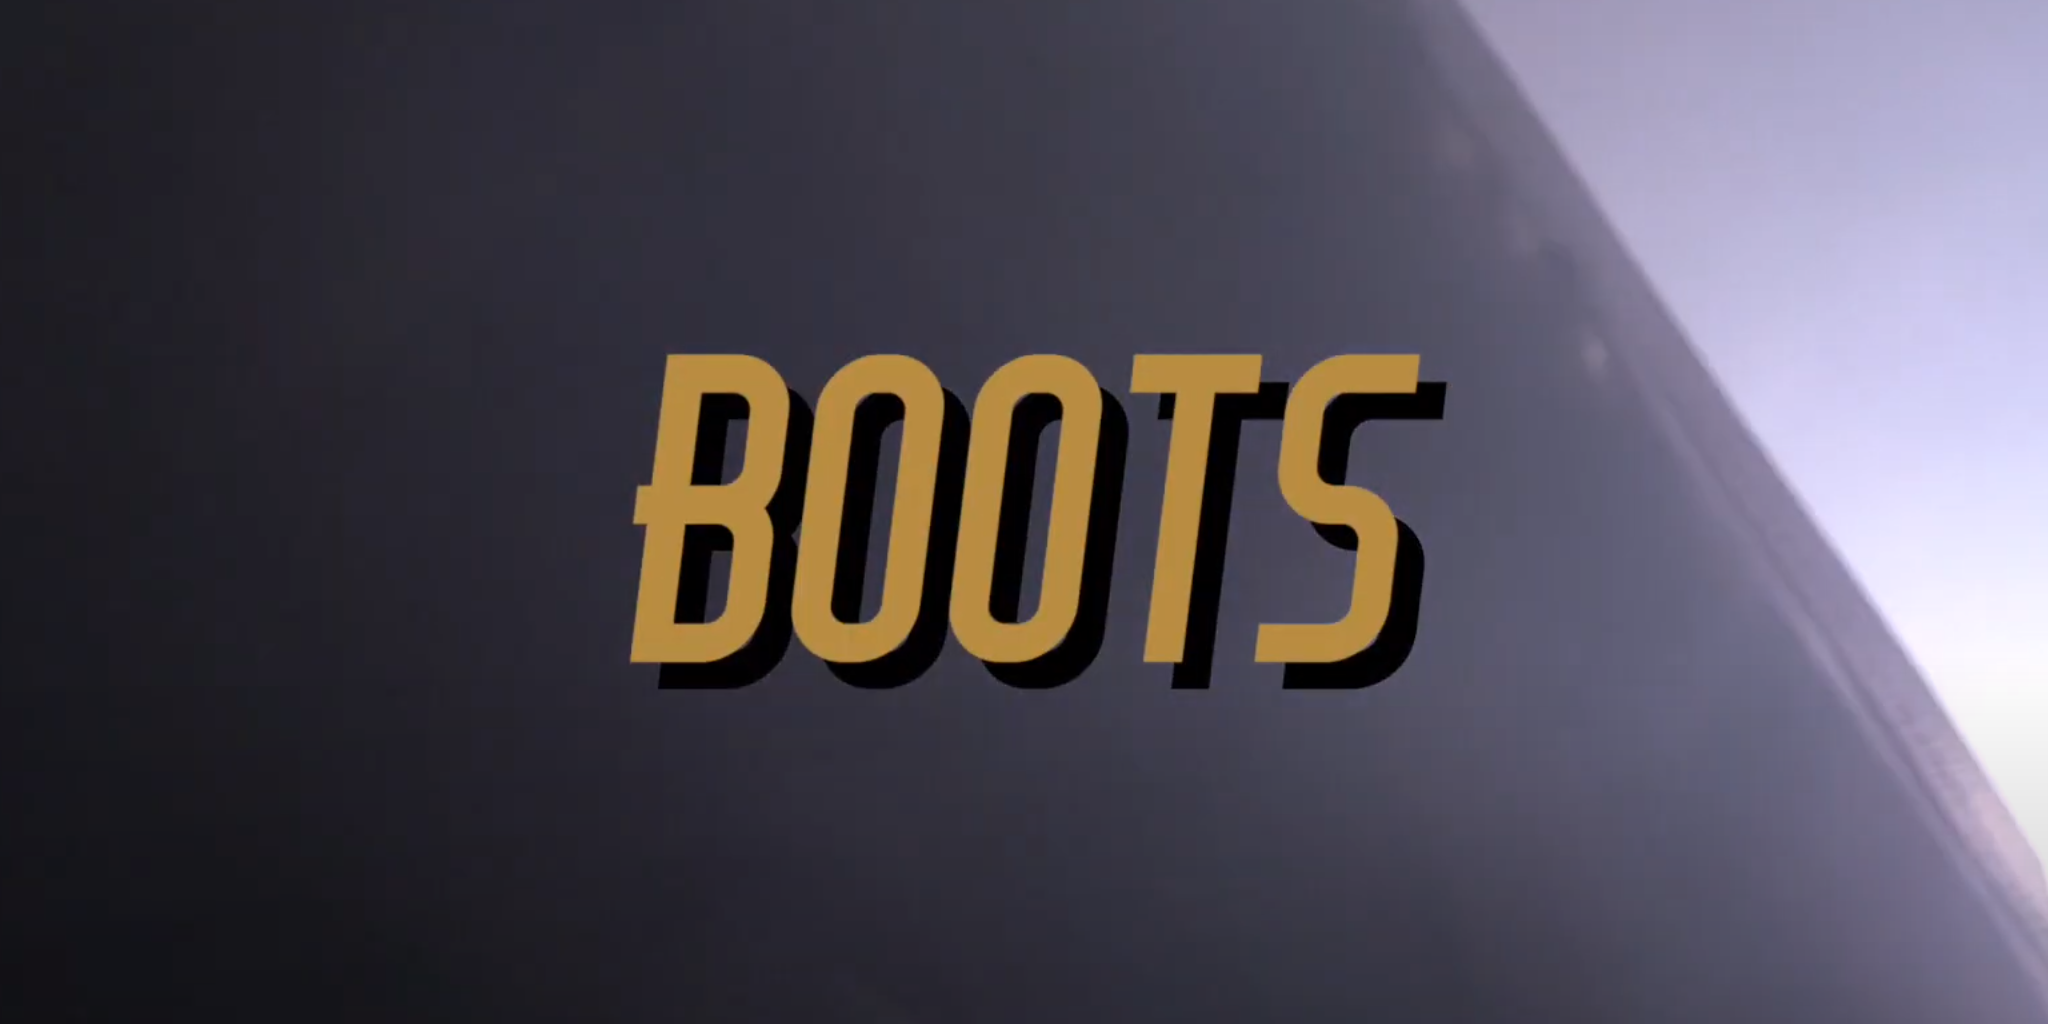 Boots - Break the Robot